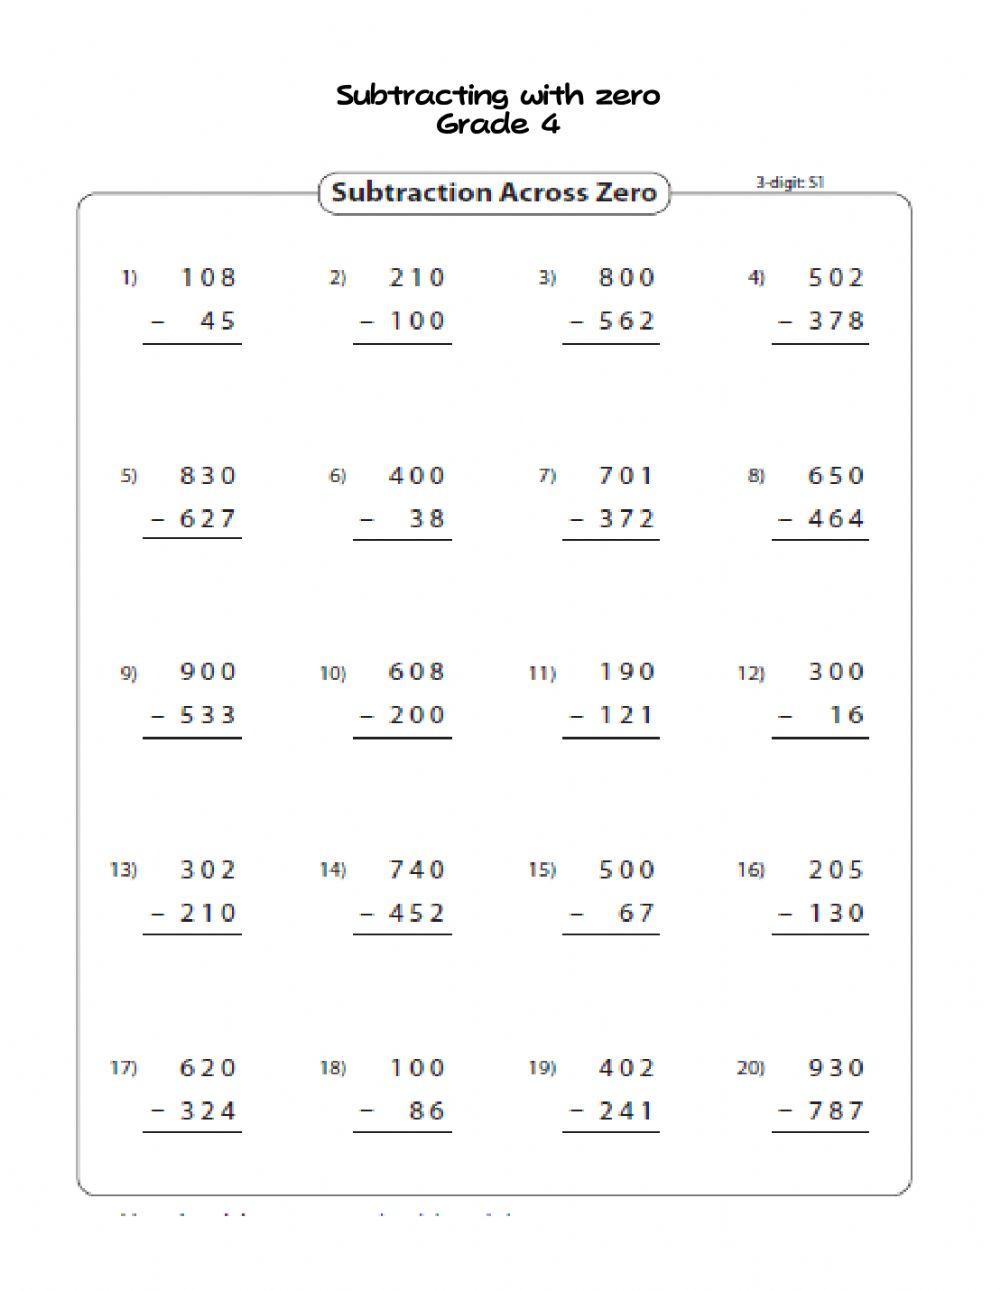 Subtract 3 digit with zero grade 4